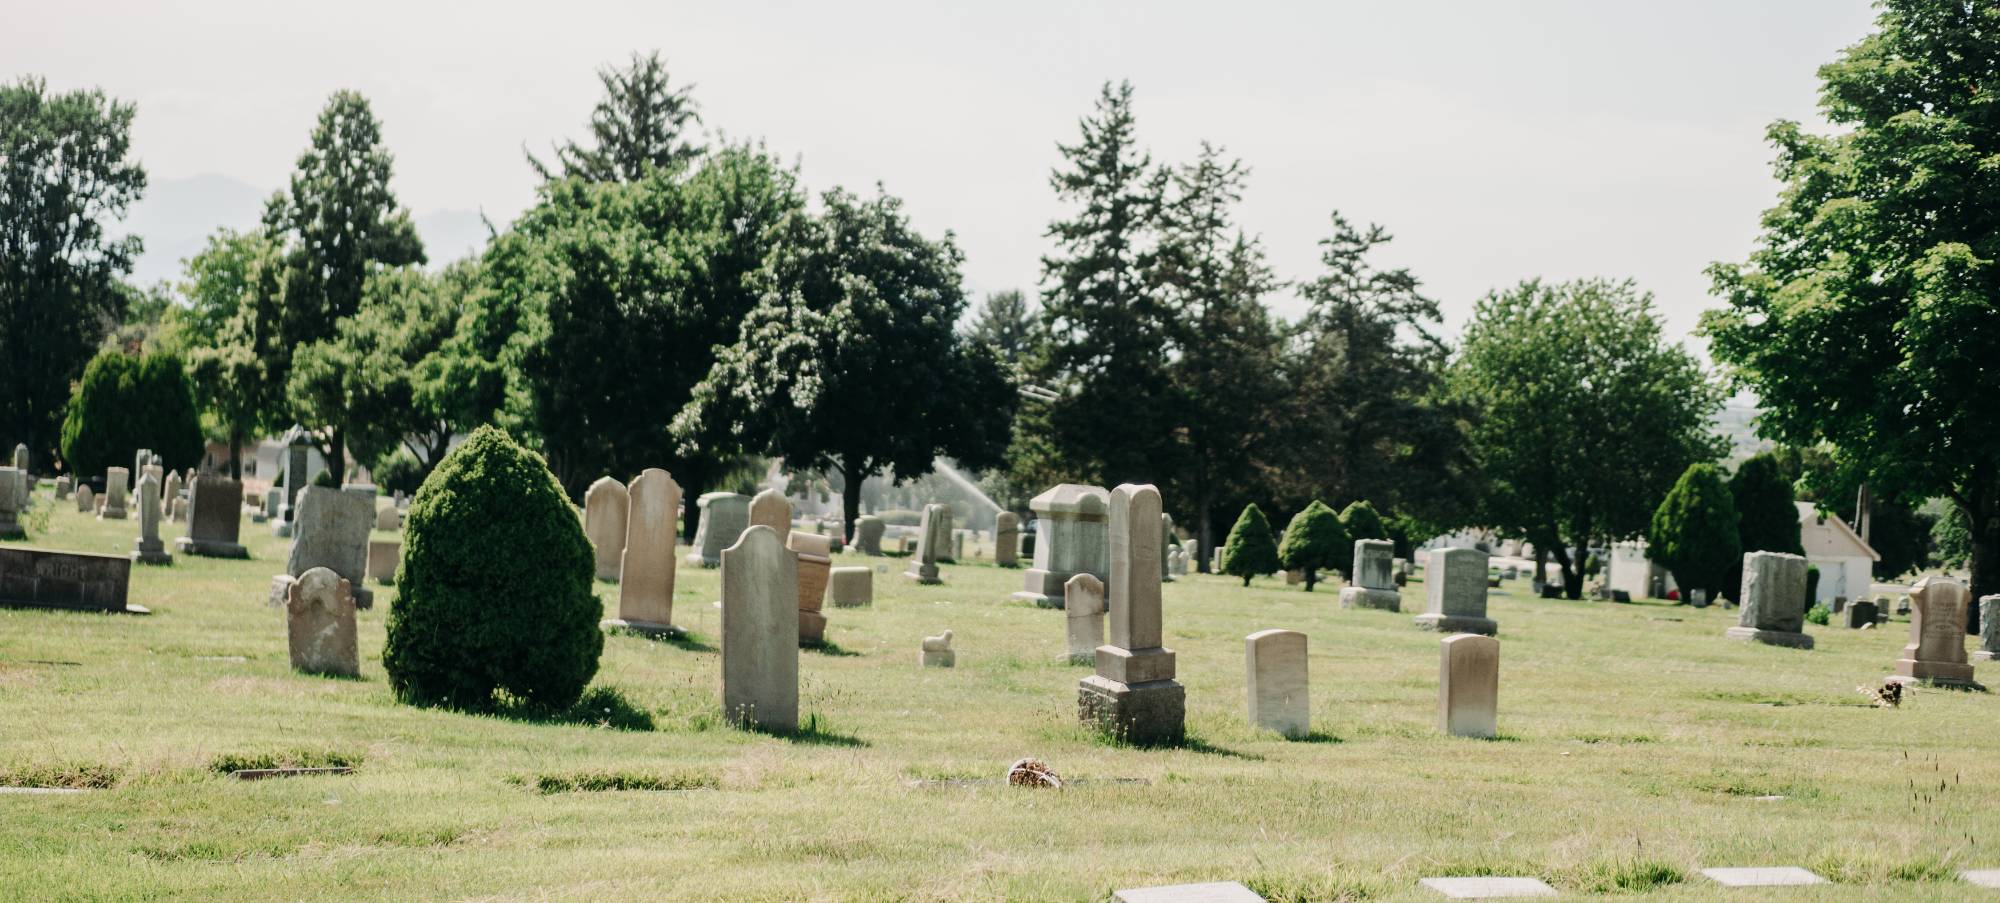 cemetery headstones